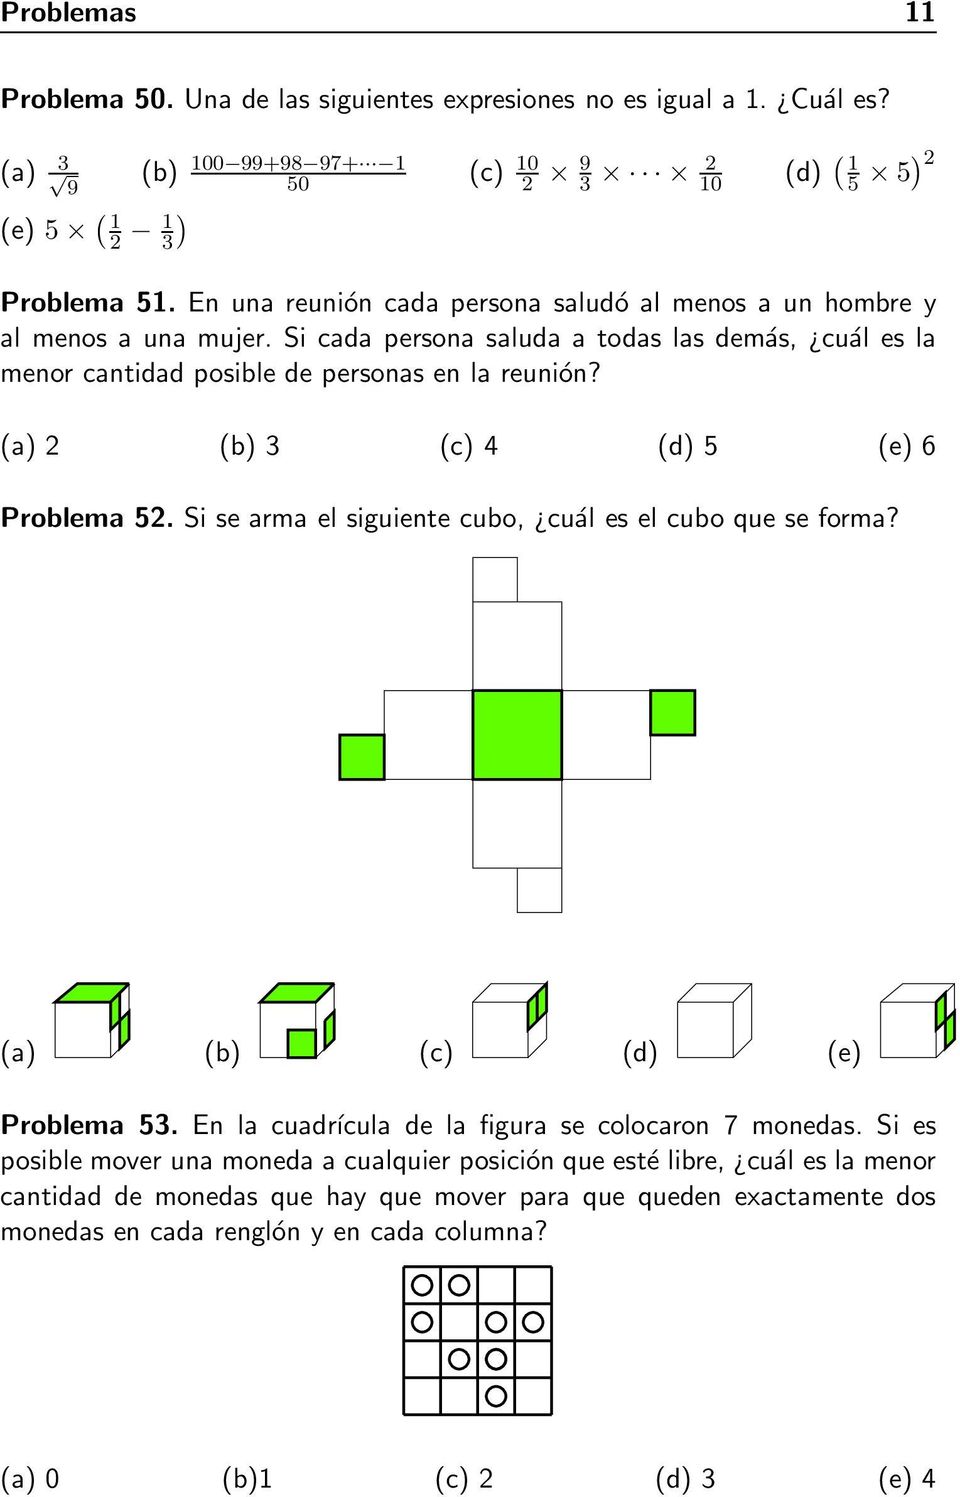 (a) 2 (b) 3 (c) 4 (d) 5 (e) 6 Problema 52. Si se arma el siguiente cubo, cuál es el cubo que se forma? (a) (b) (c) (d) (e) Problema 53. En la cuadrícula de la figura se colocaron 7 monedas.